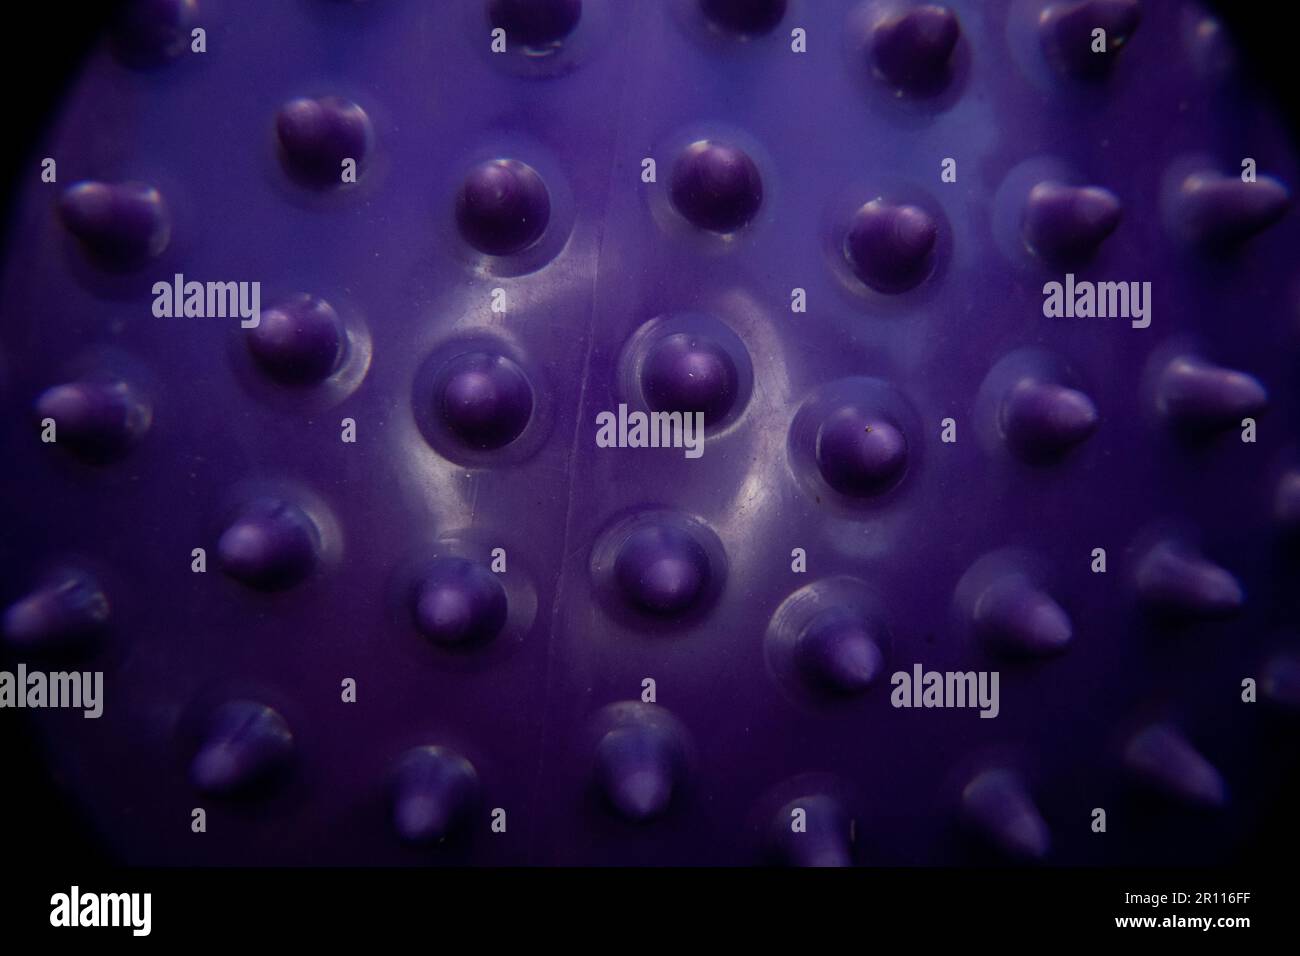 Macro gros plan de la texture de la boule sensorielle à pointes violettes avec espace de copie, Macro photographie de la boule sensorielle pourpre d'un enfant qui peut être utilisée t Banque D'Images